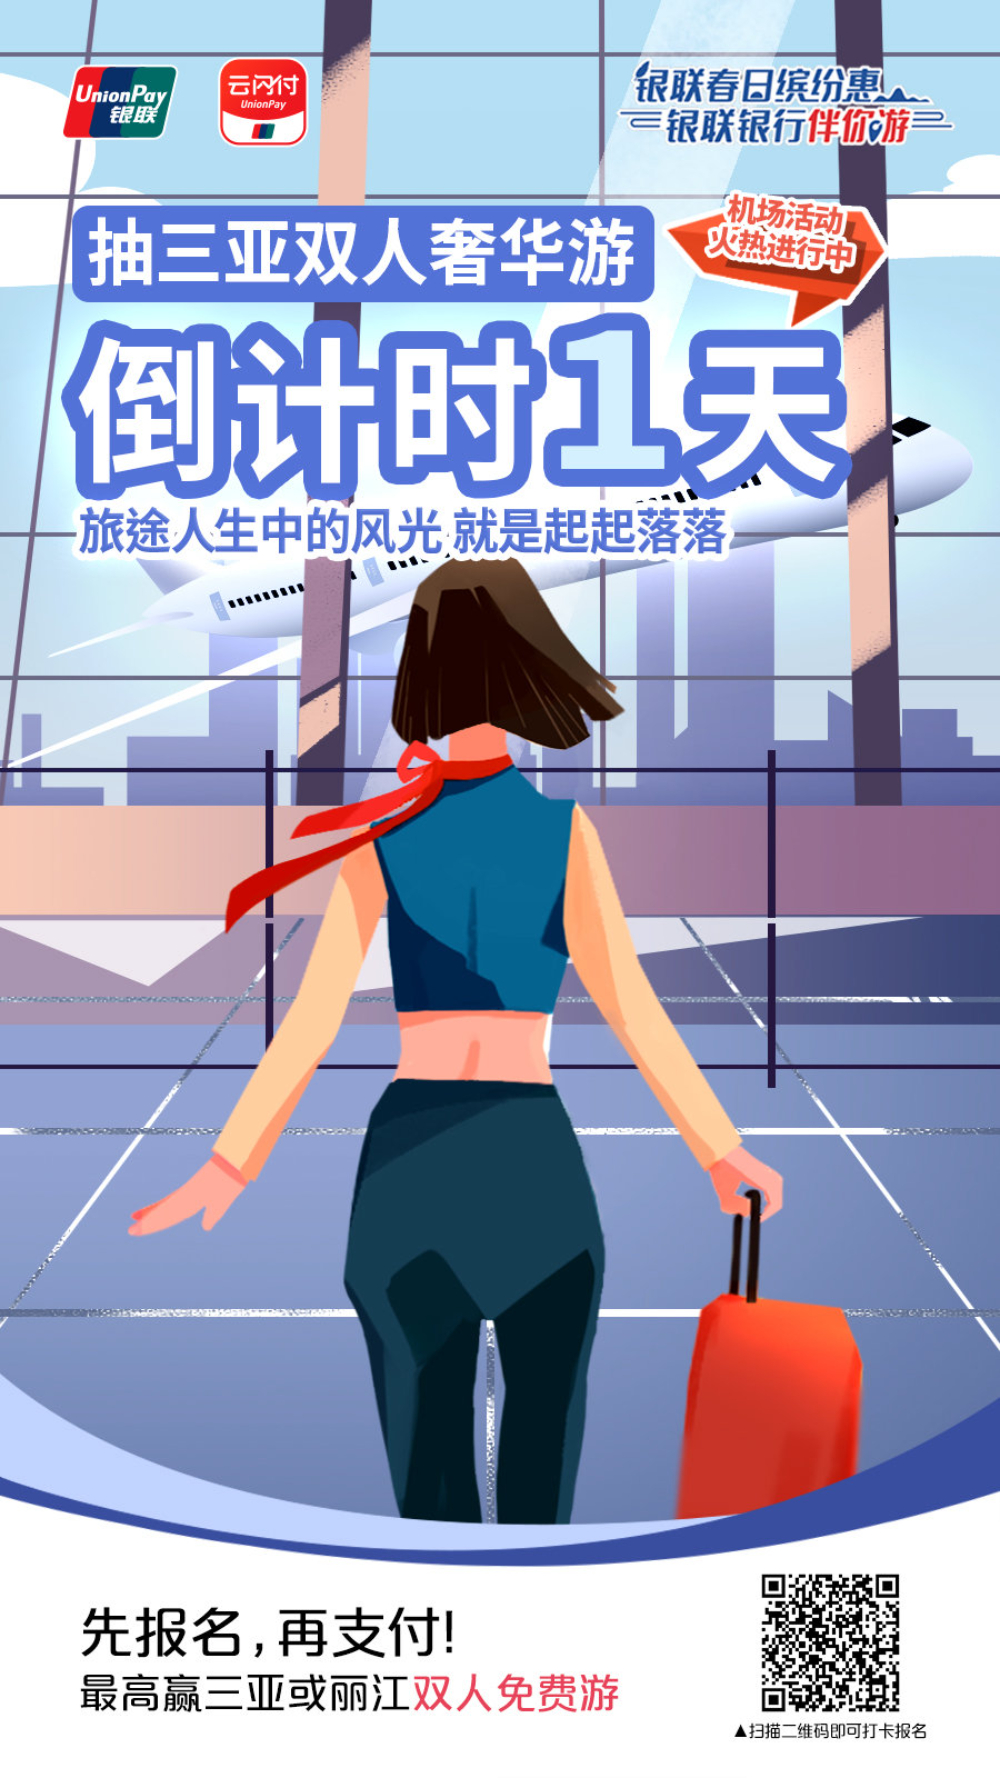 12张中国银联的插画营销海报